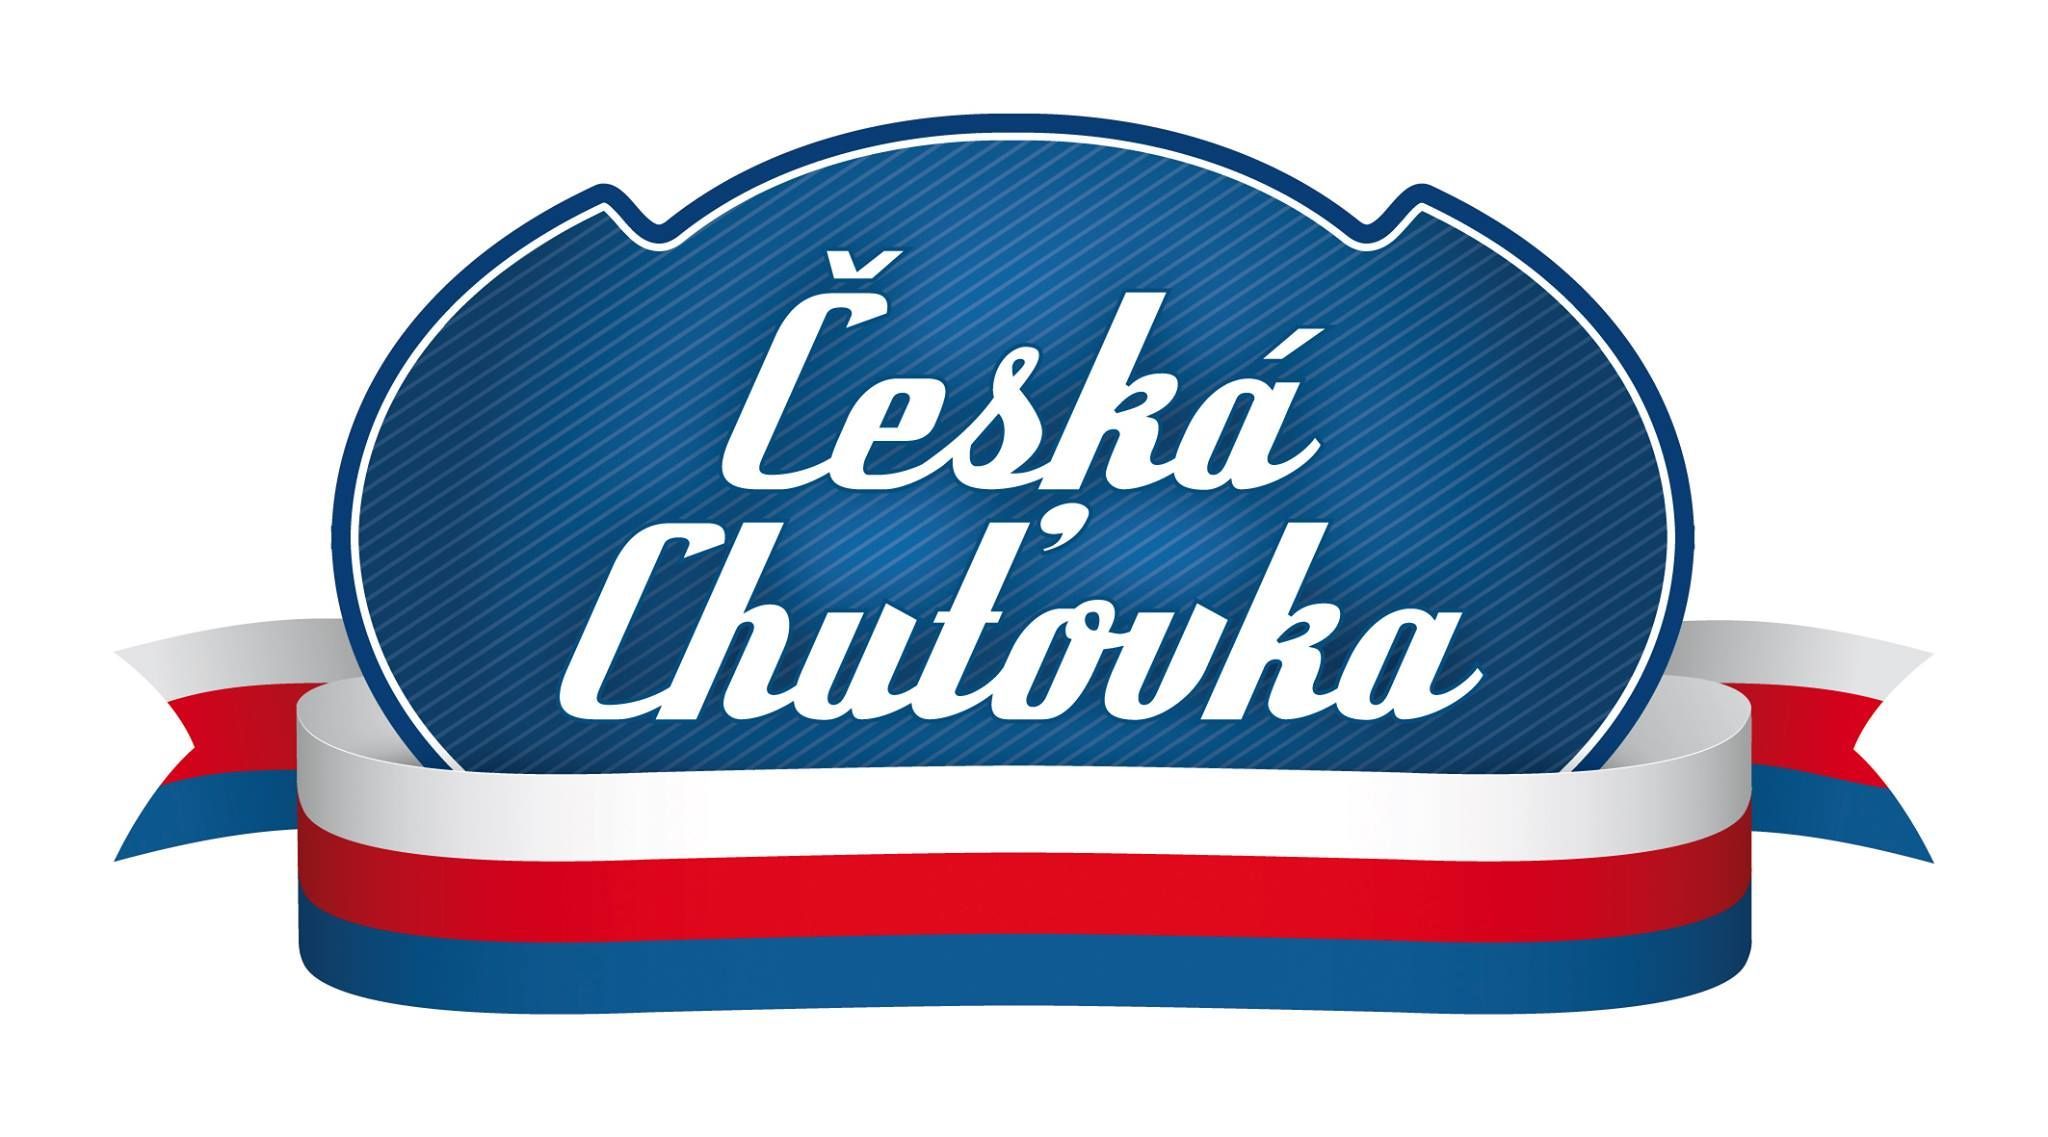 Česká chuťovka - logo